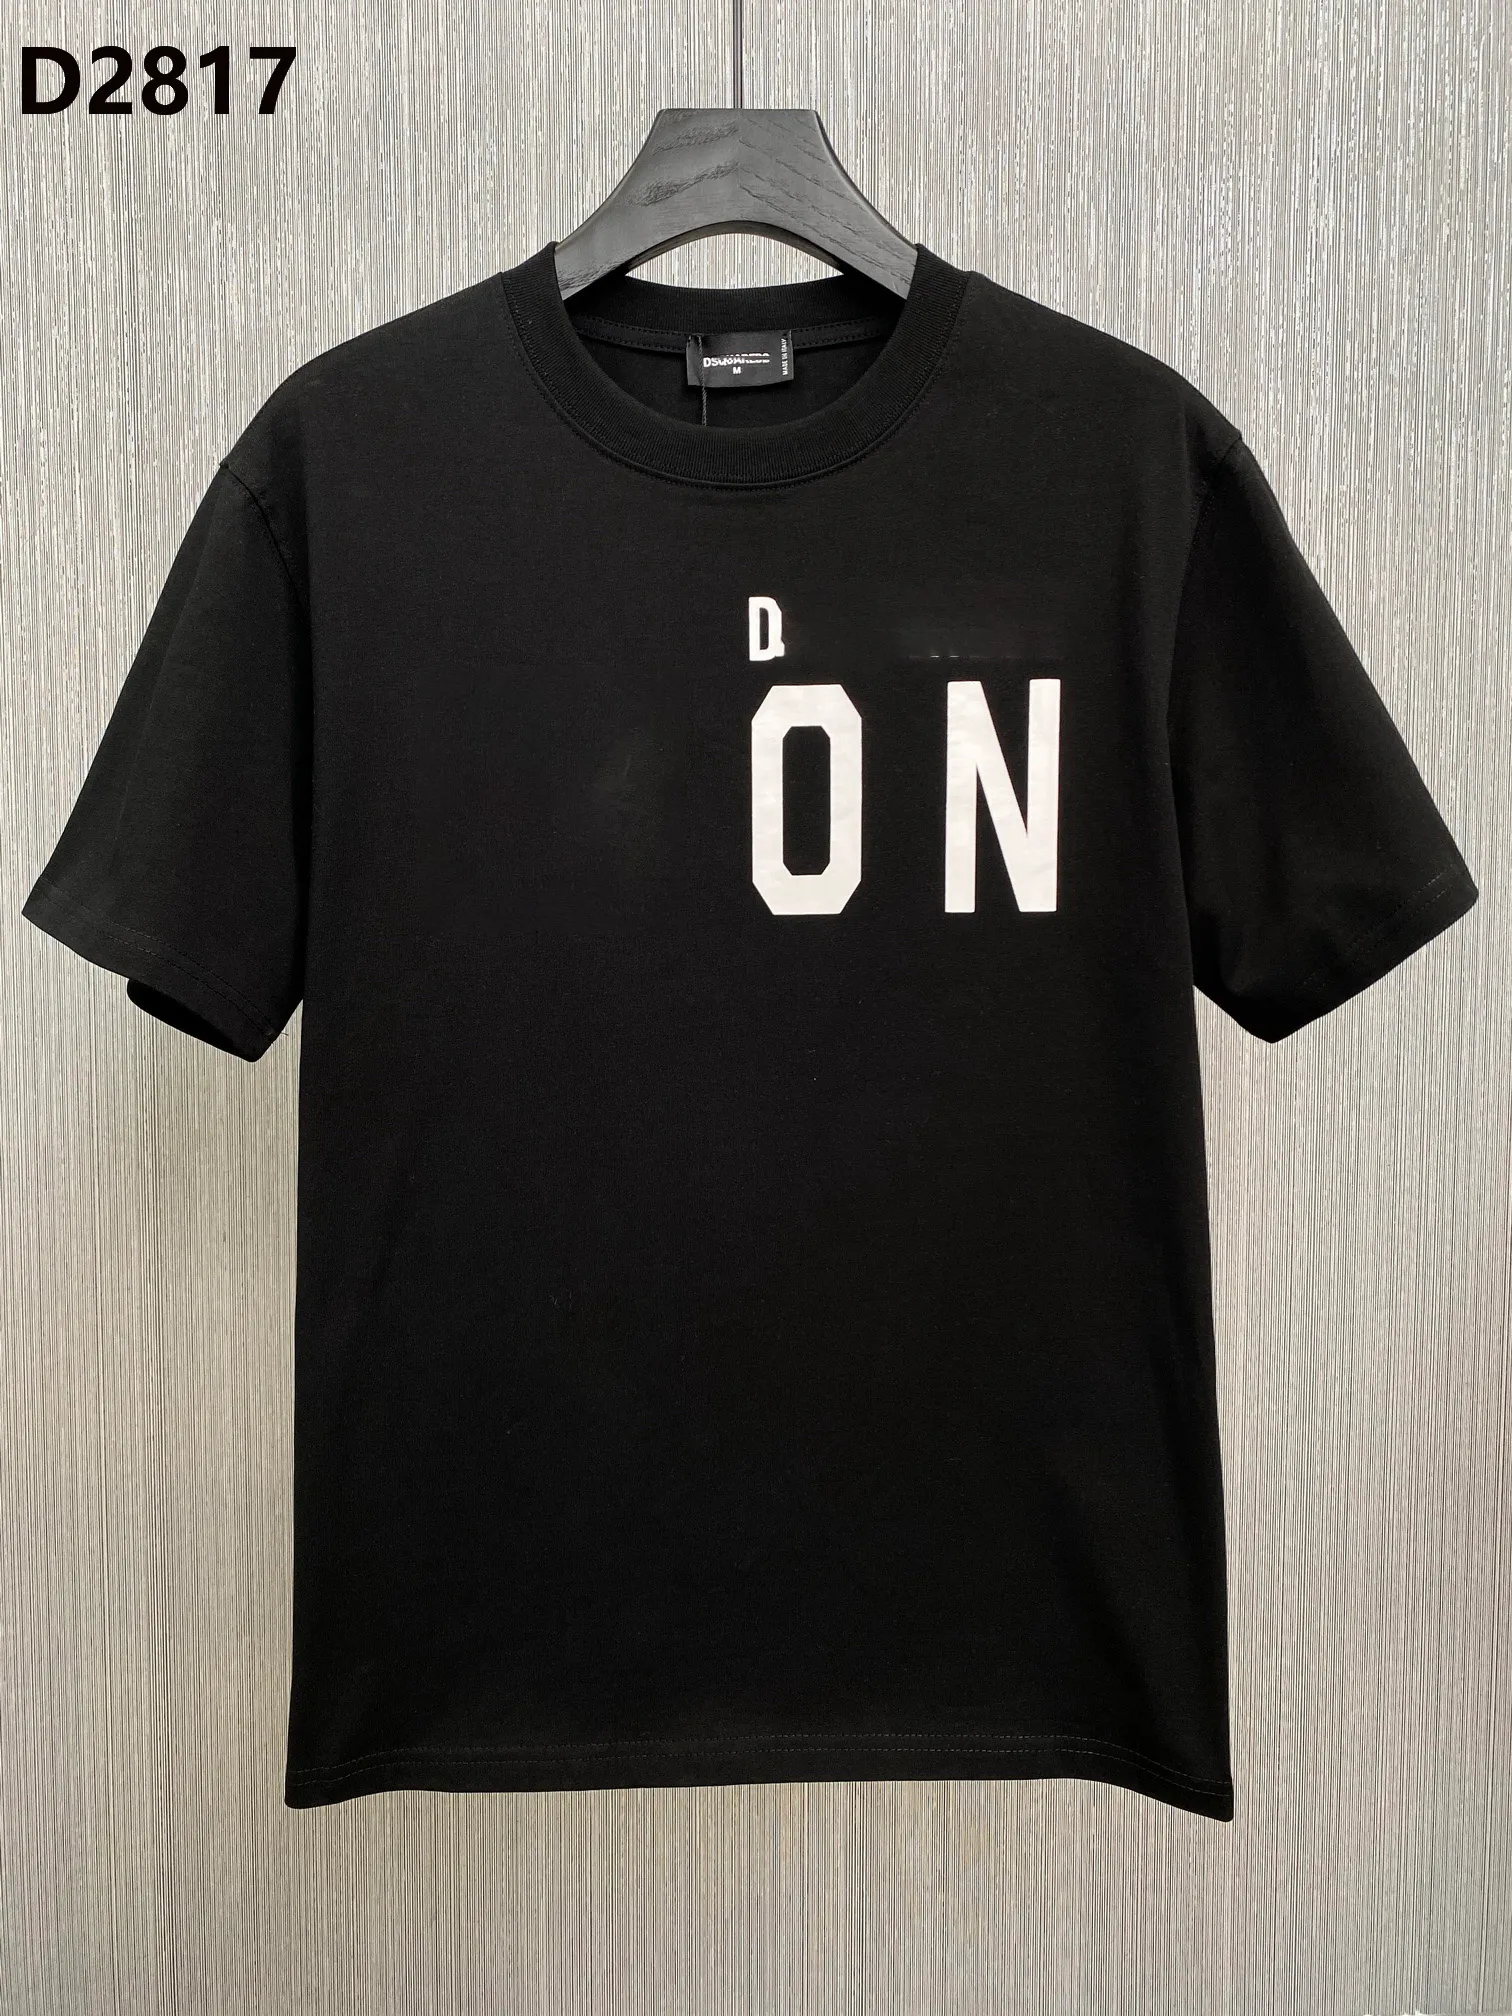 Италия Новая мужская дизайнерская футболка Paris Fashion Tshirts Summer D Футболка мужская высокая качество 100% хлопка M-XXXL 28170